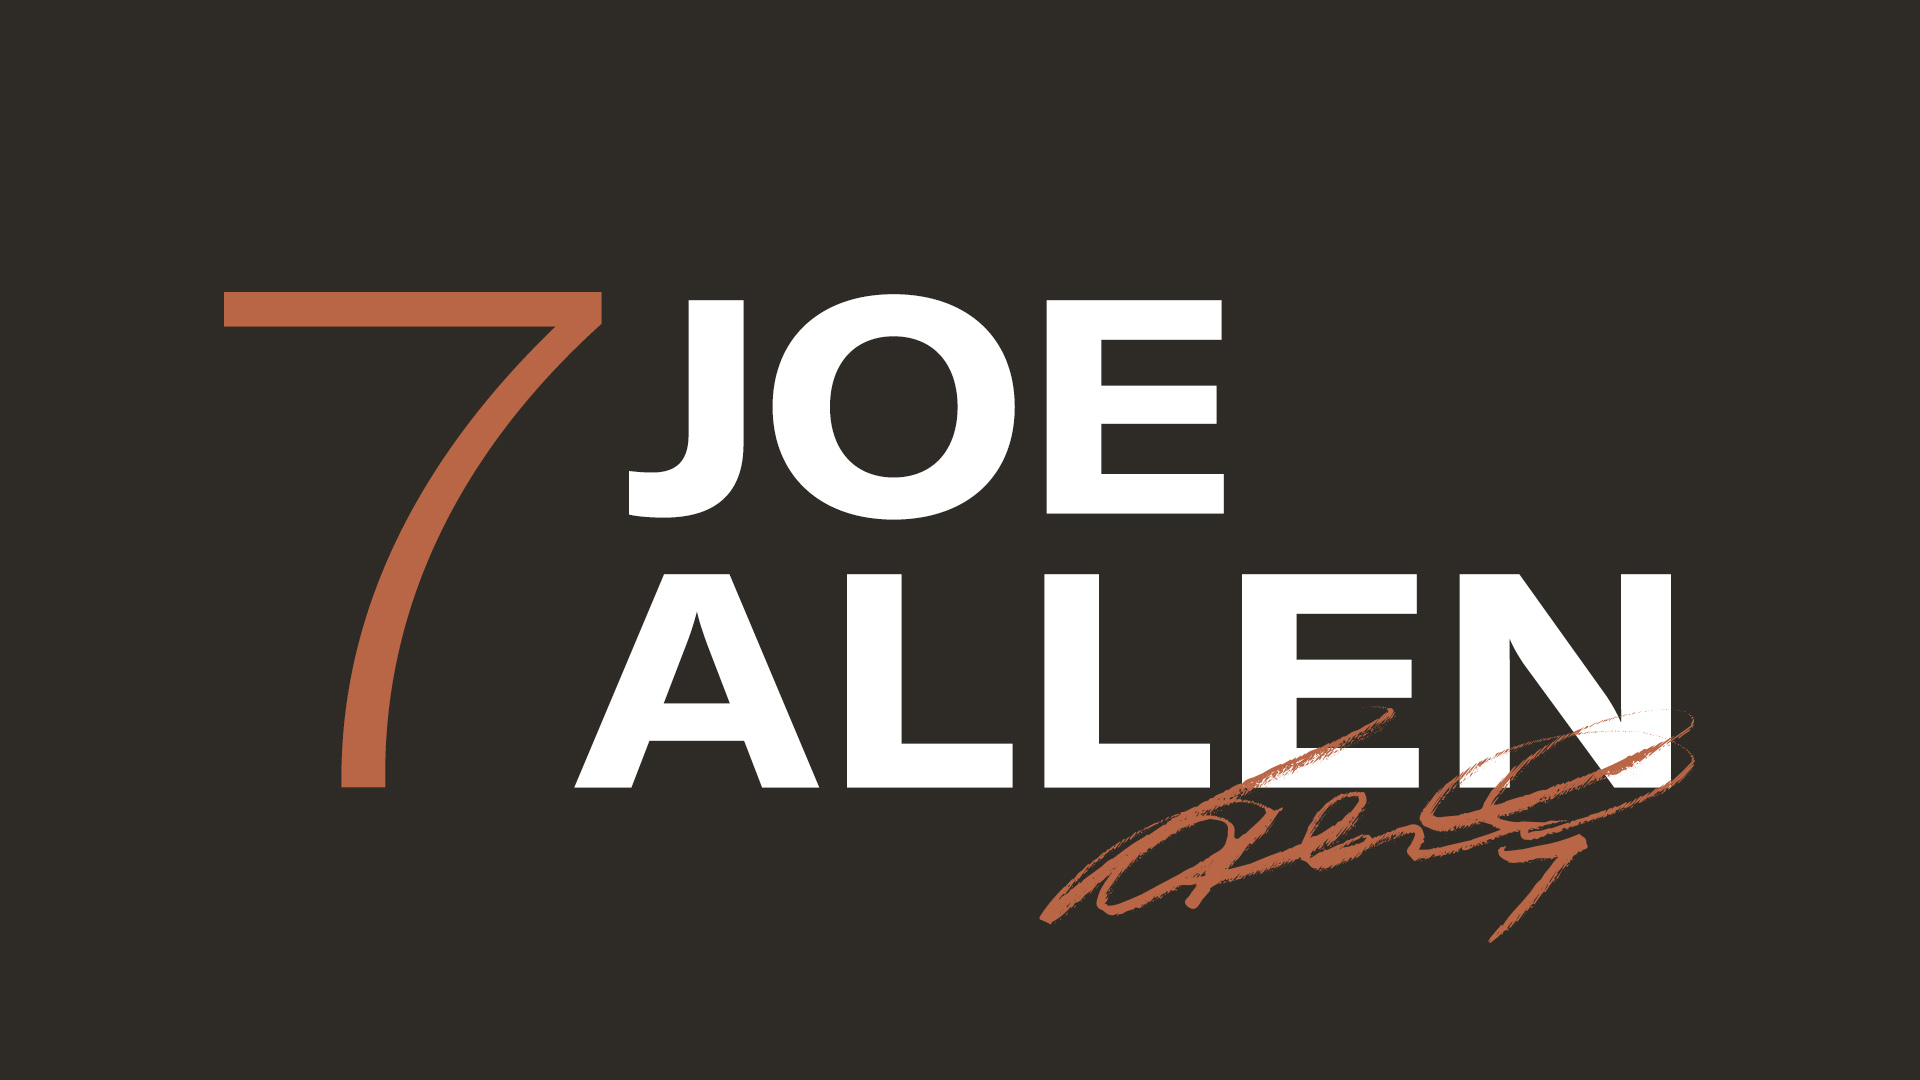 7 - Joe Allen